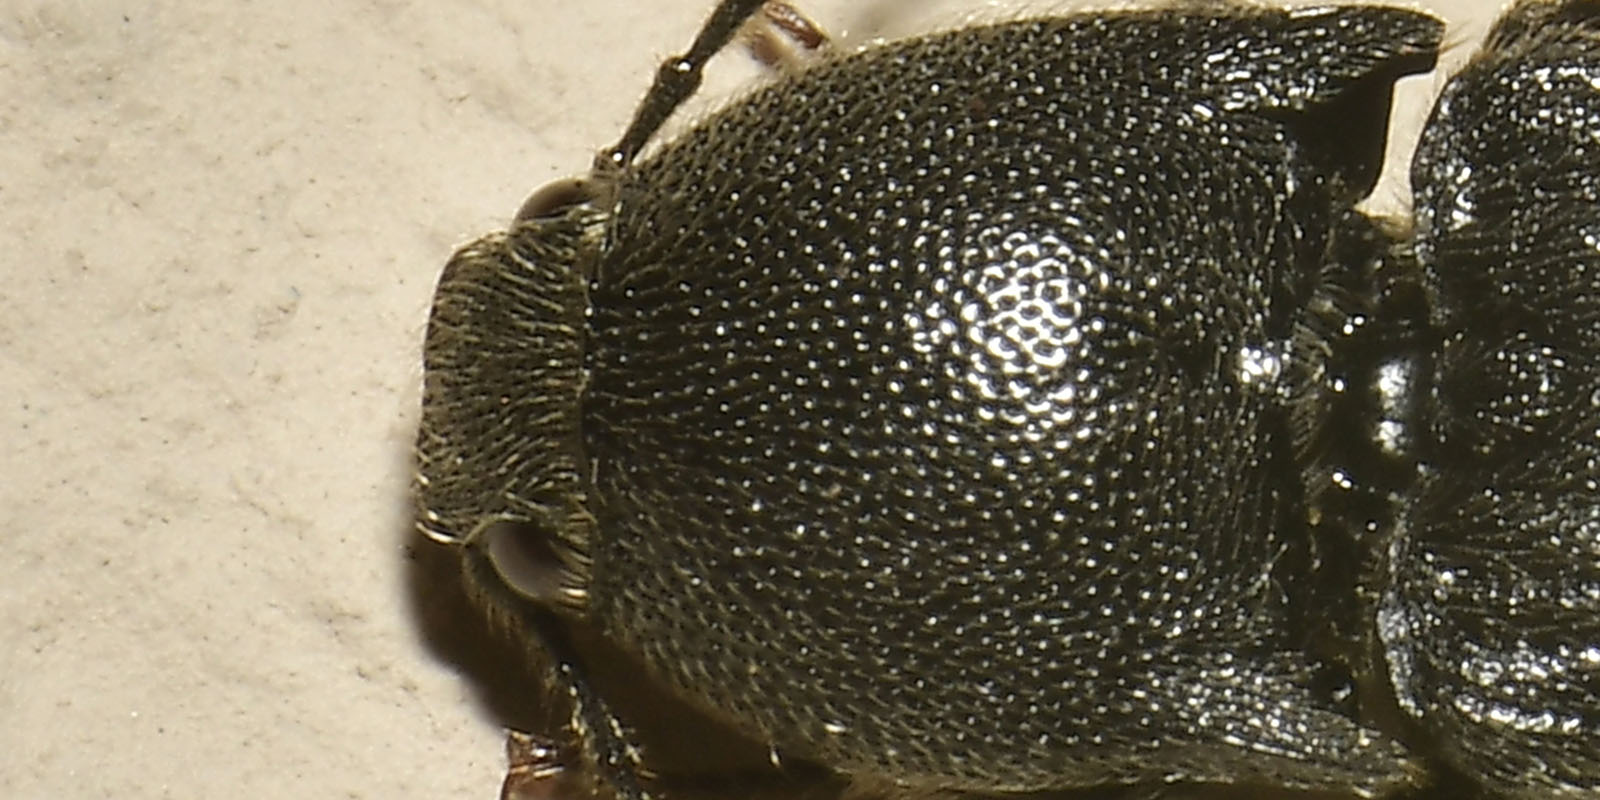 Elateridae: Melanotus sp?